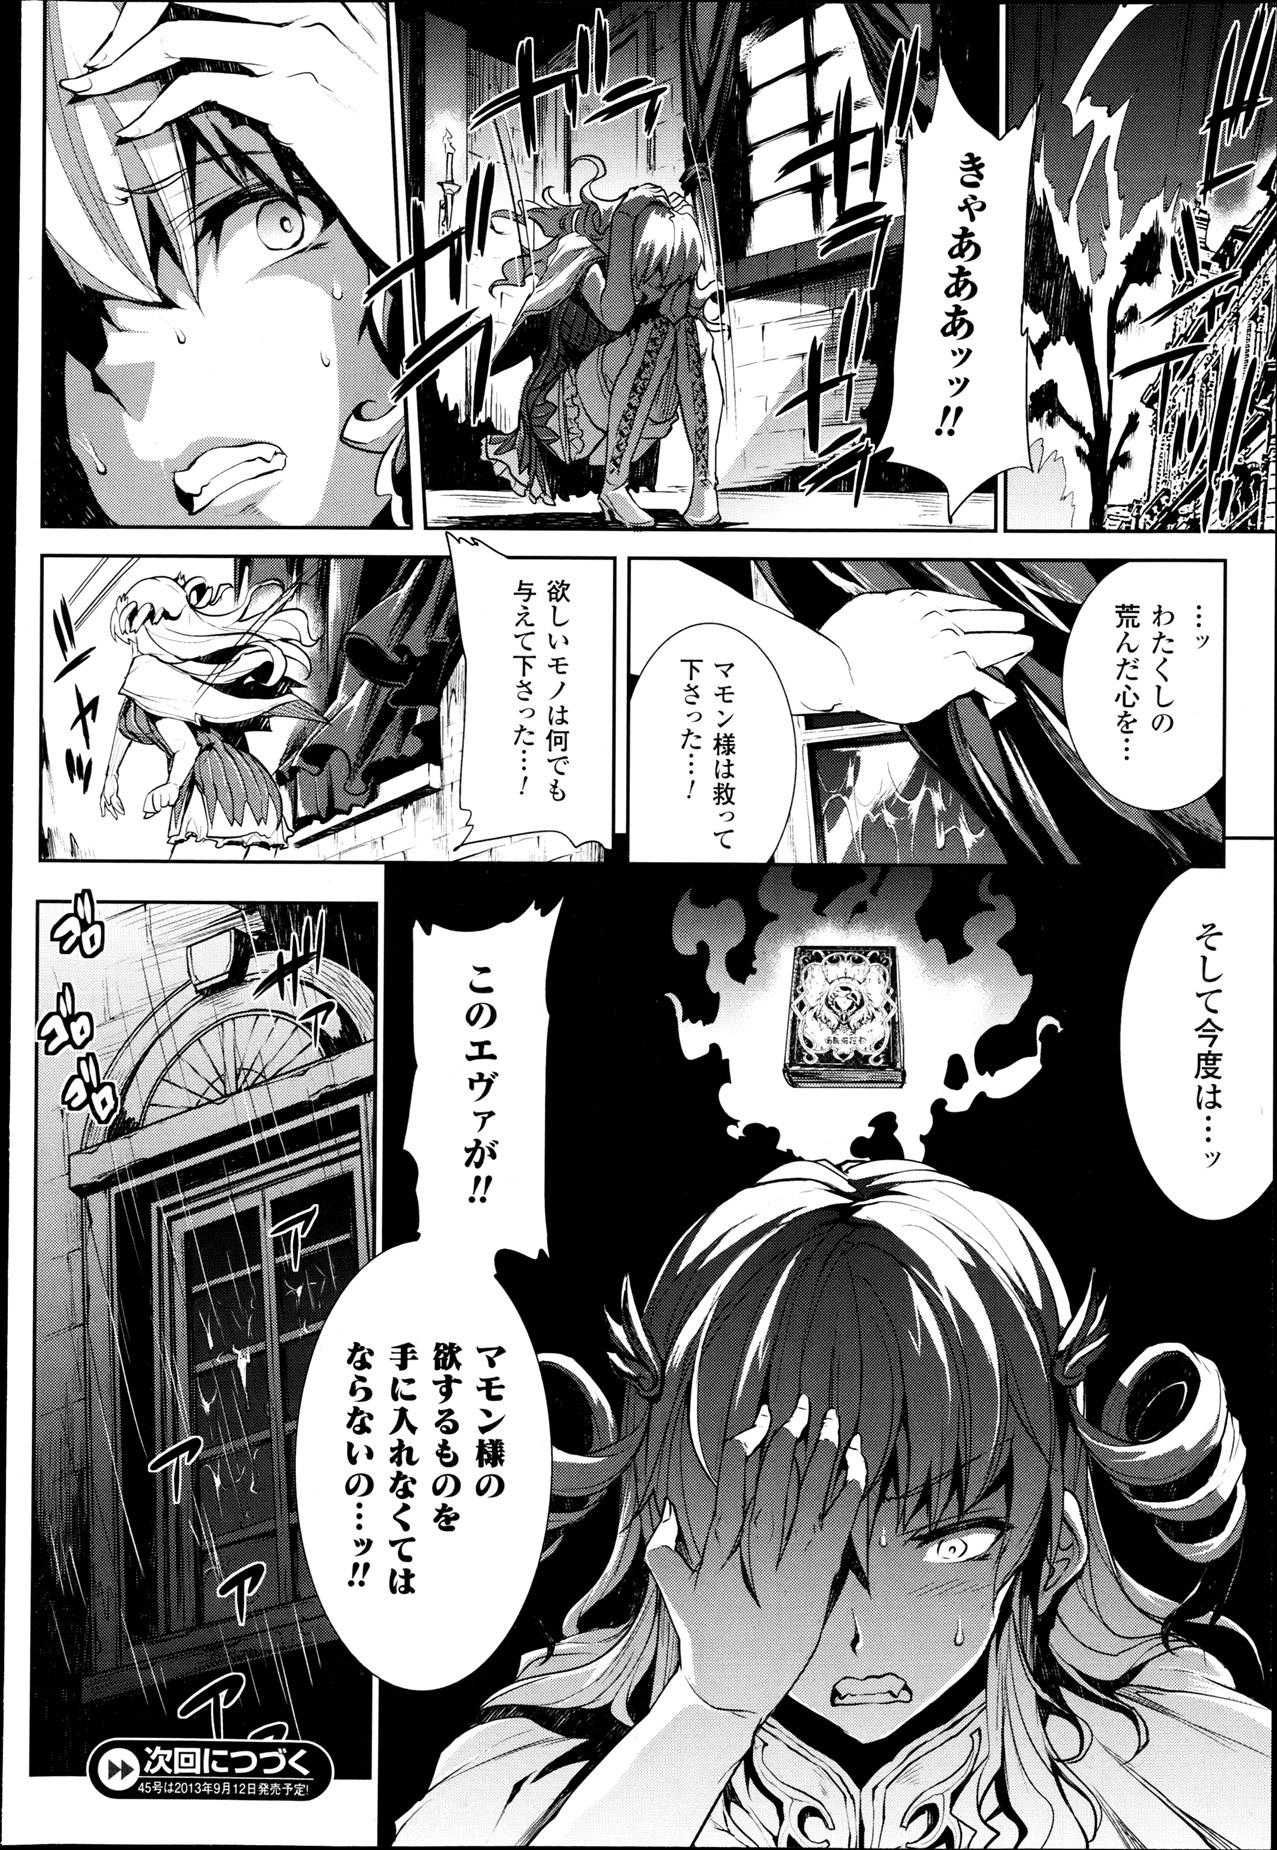 [Erect Sawaru] Shinkyoku no Grimoire -PANDRA saga 2nd story- Ch 07-9.5 25